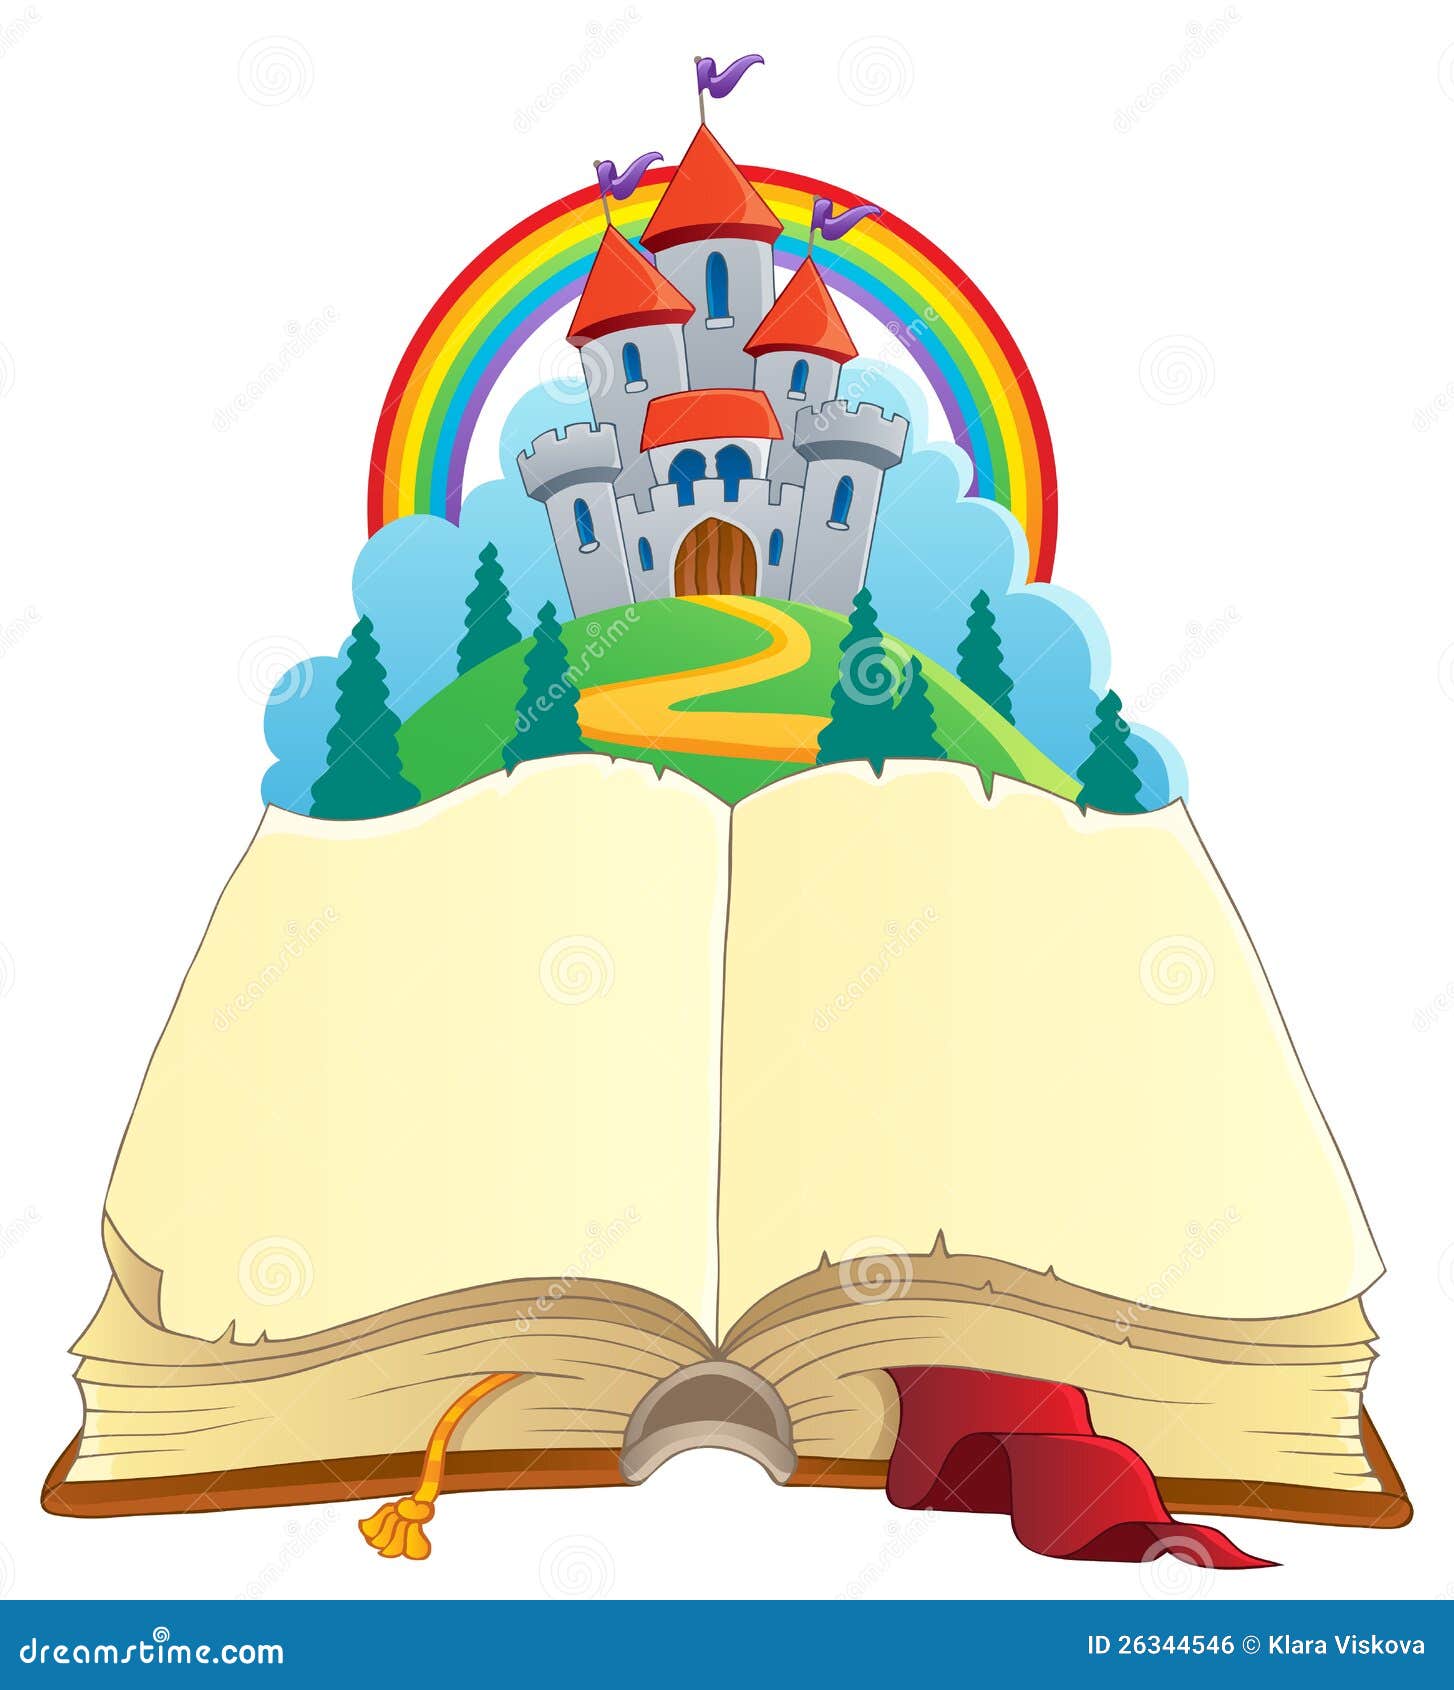 fairy tale book theme image 1